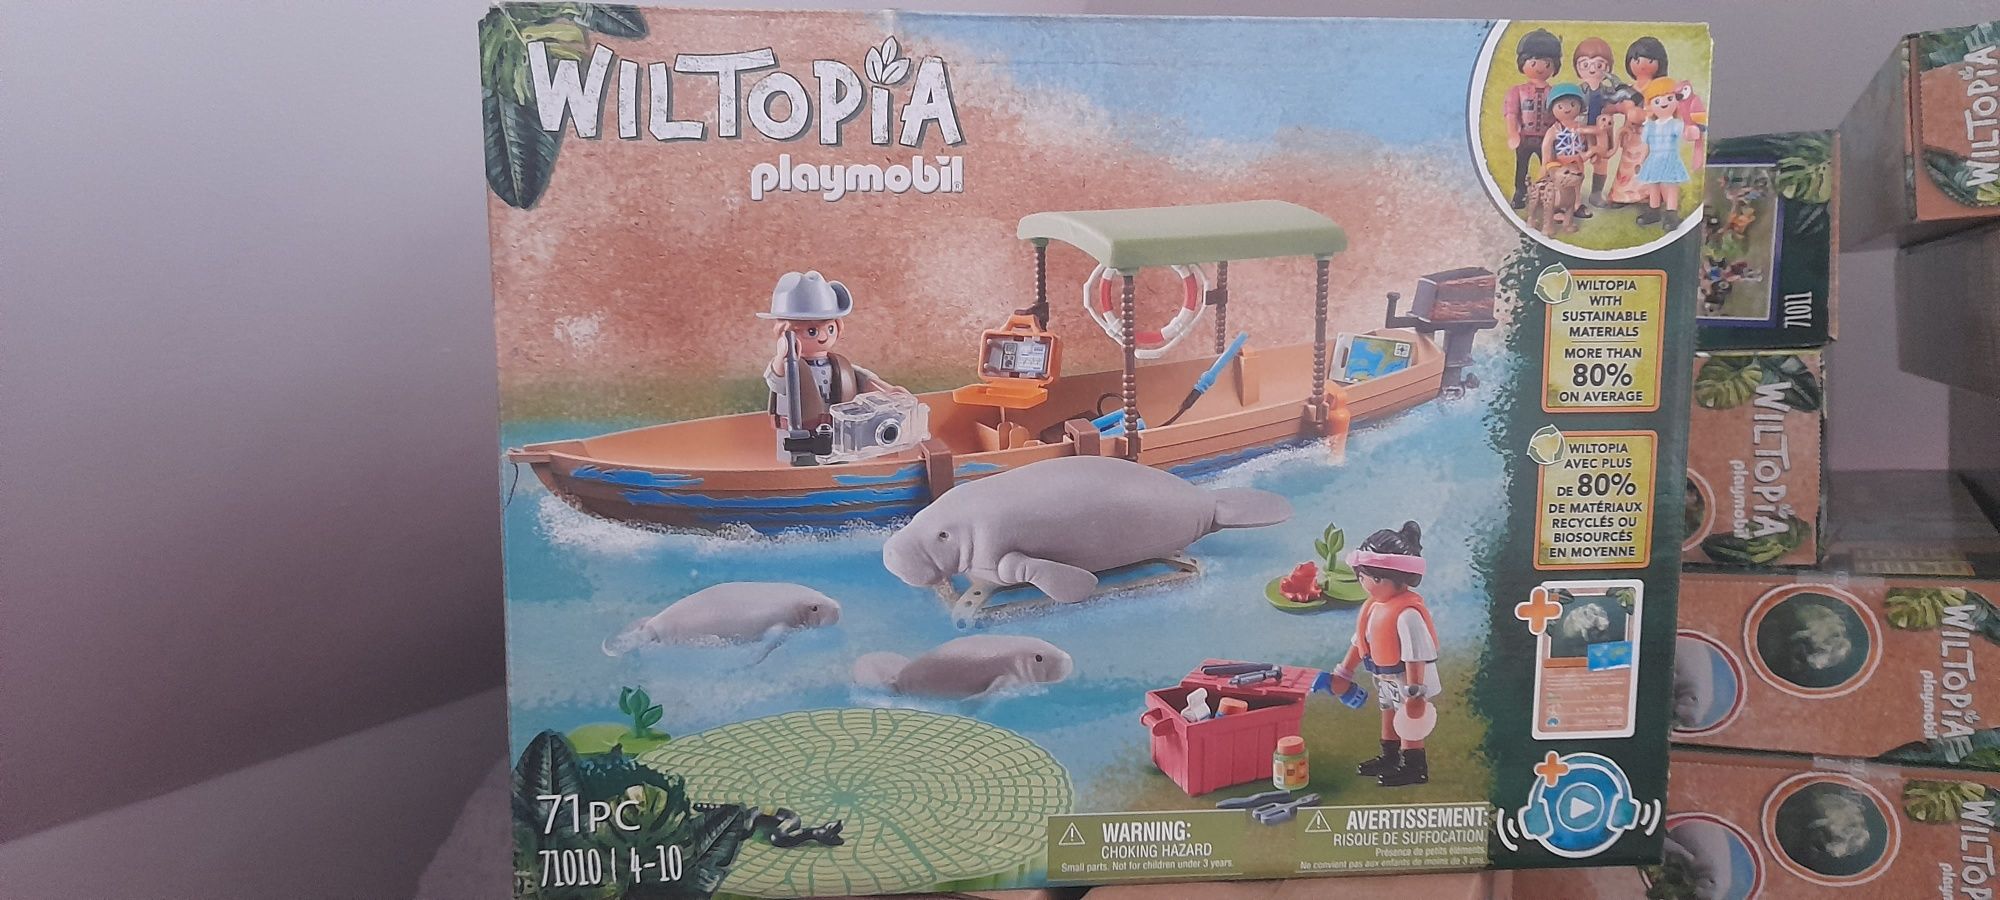 Playmobil Wiltopia Wycieczka do Manatów+Figurka PlaymoFriends